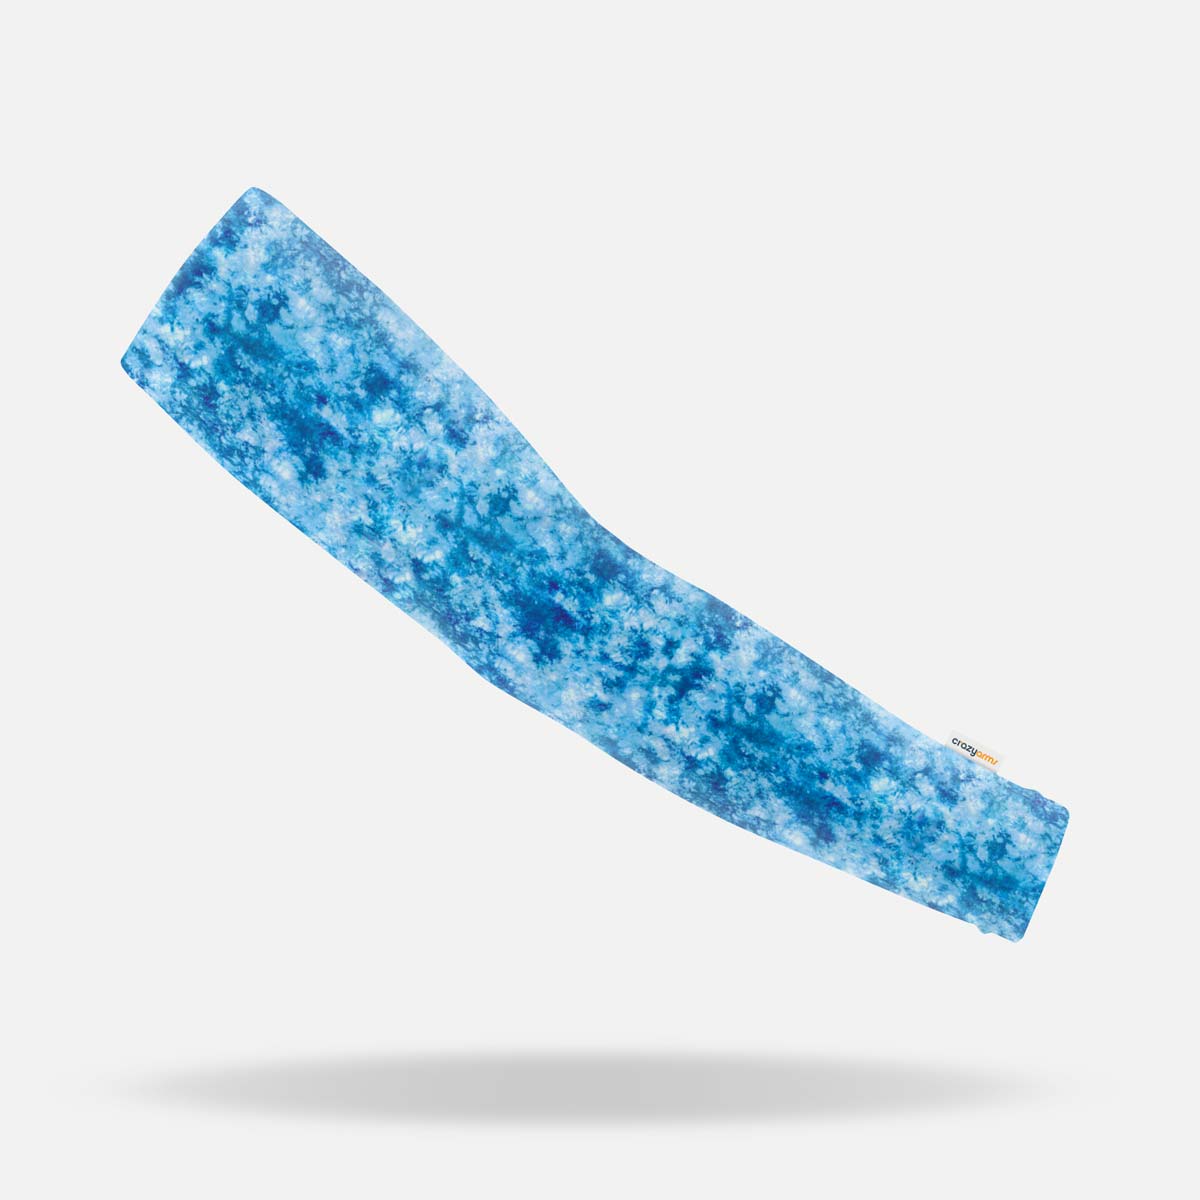 Coral Blue Tie-Dye Kids Arm Sleeves